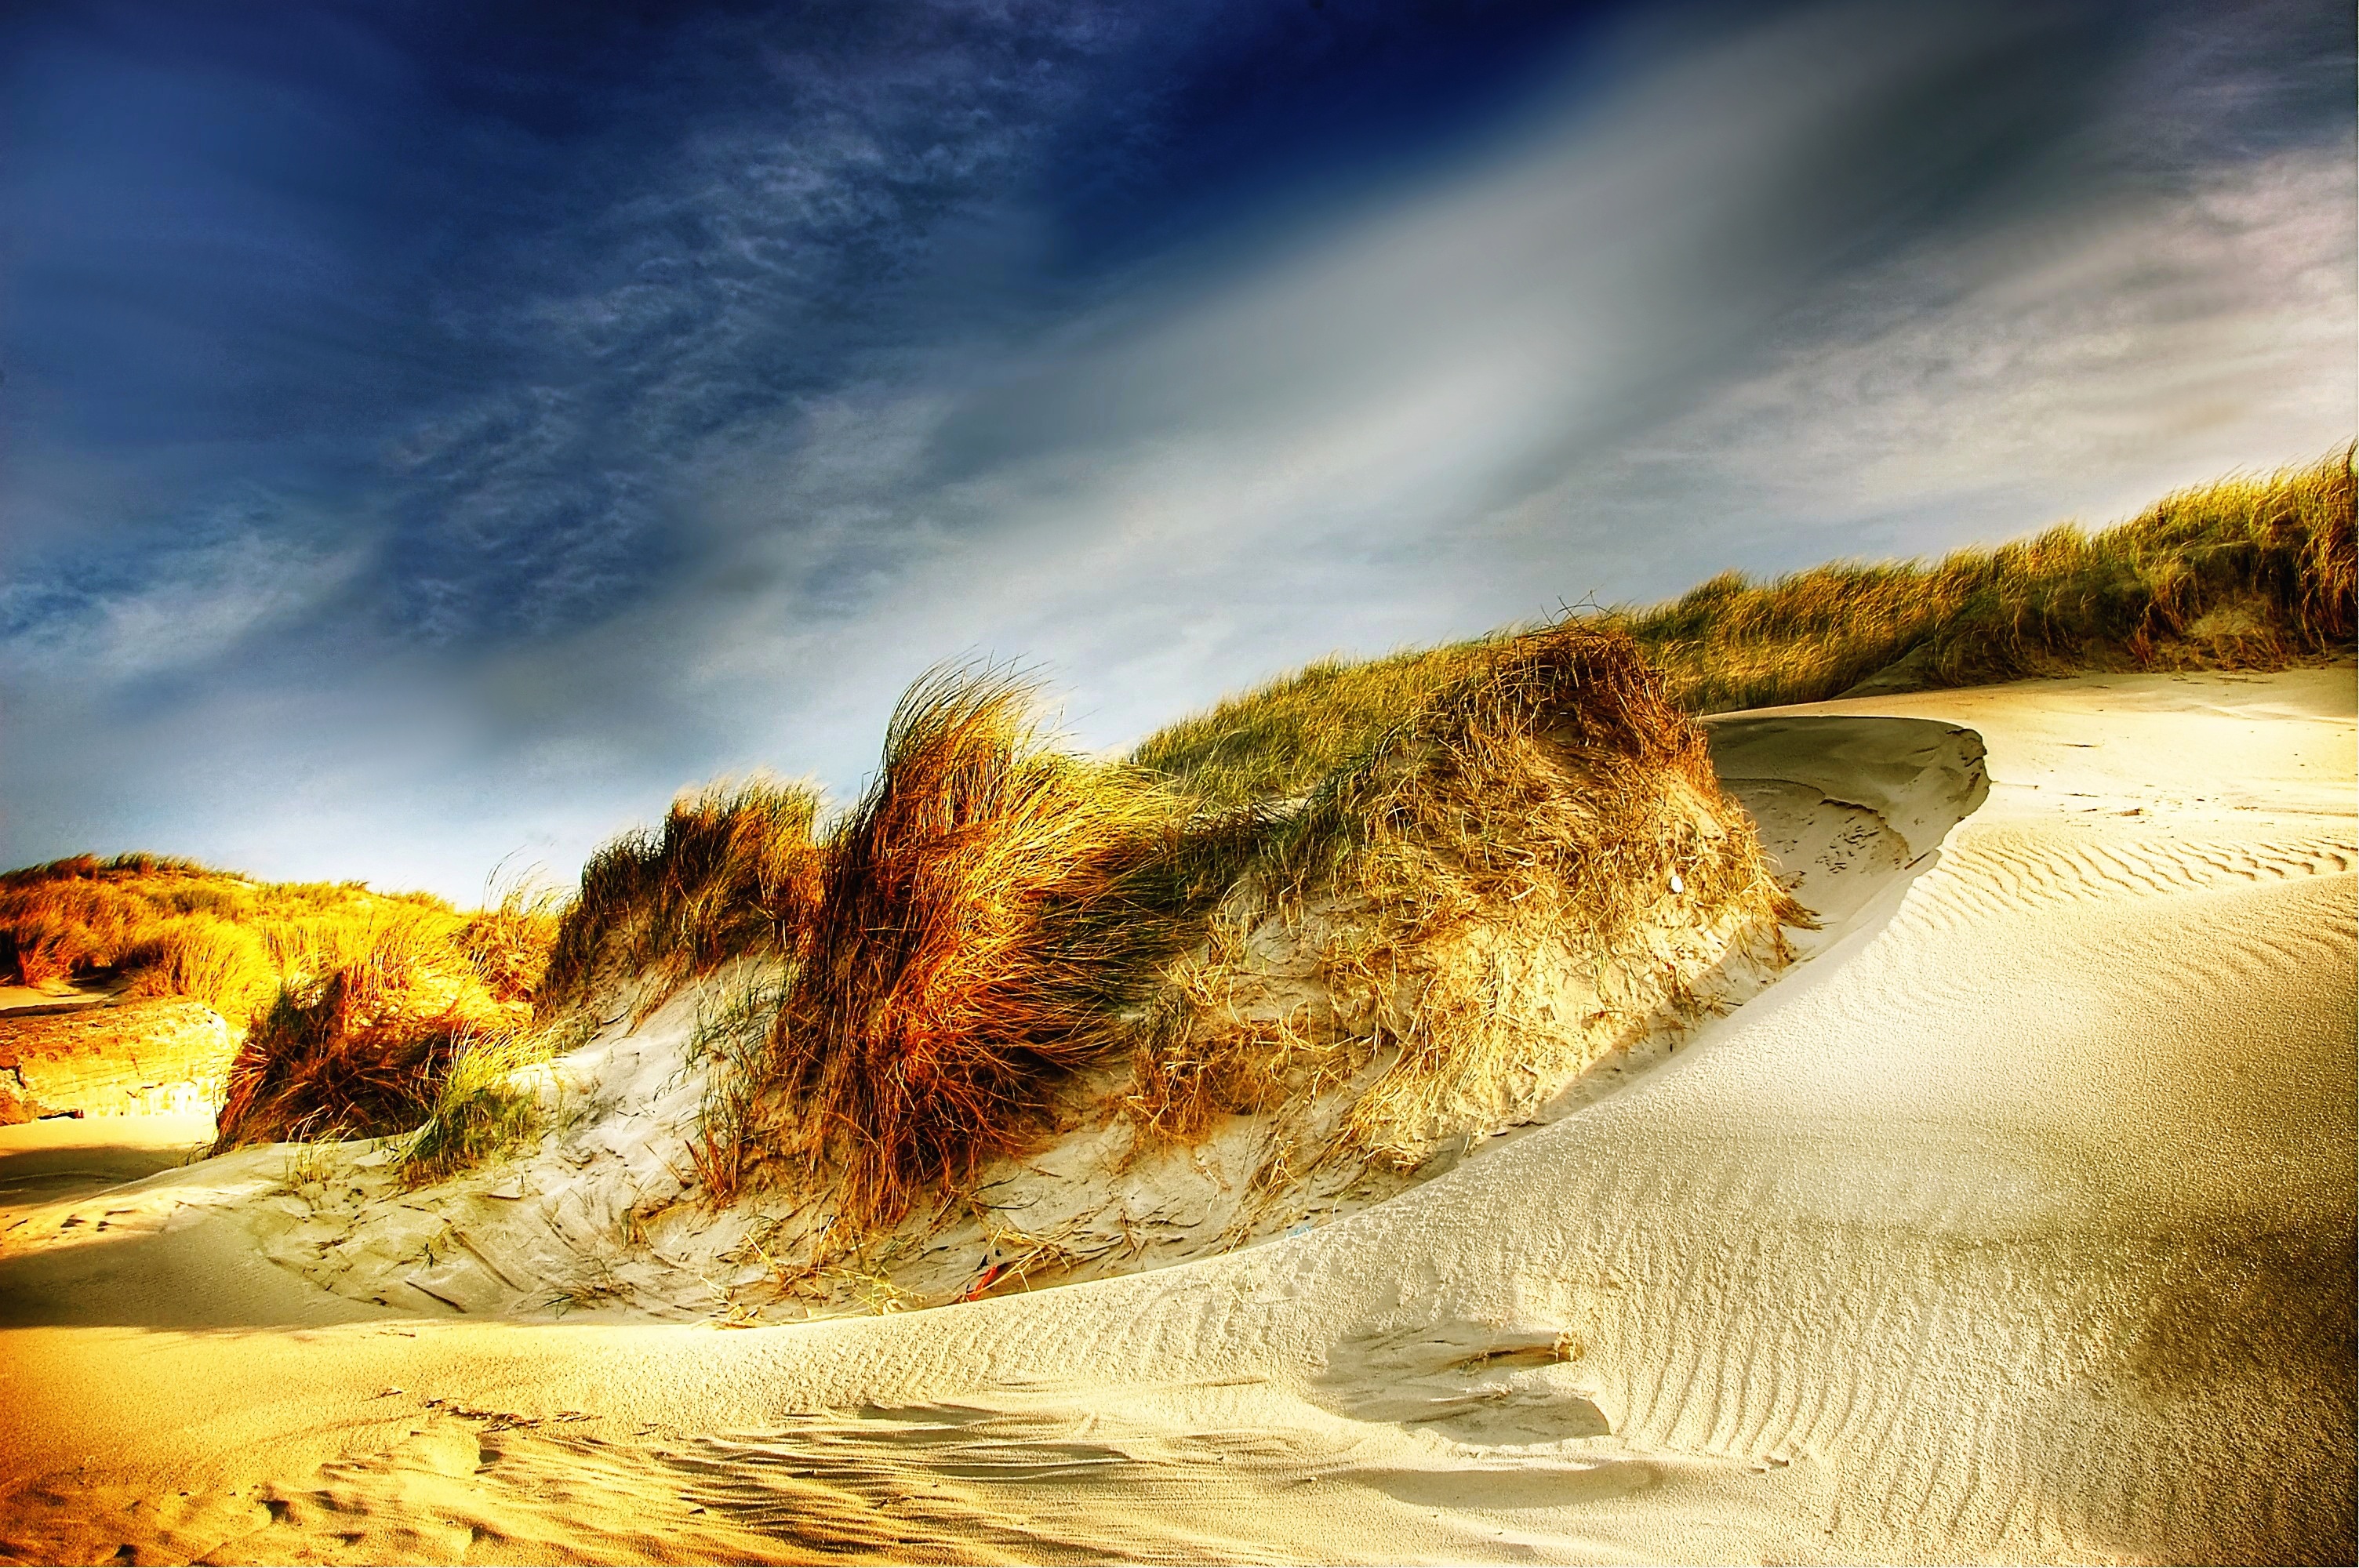 Sand Dunes, Desert, Deserted, Dune, Landscape, HQ Photo